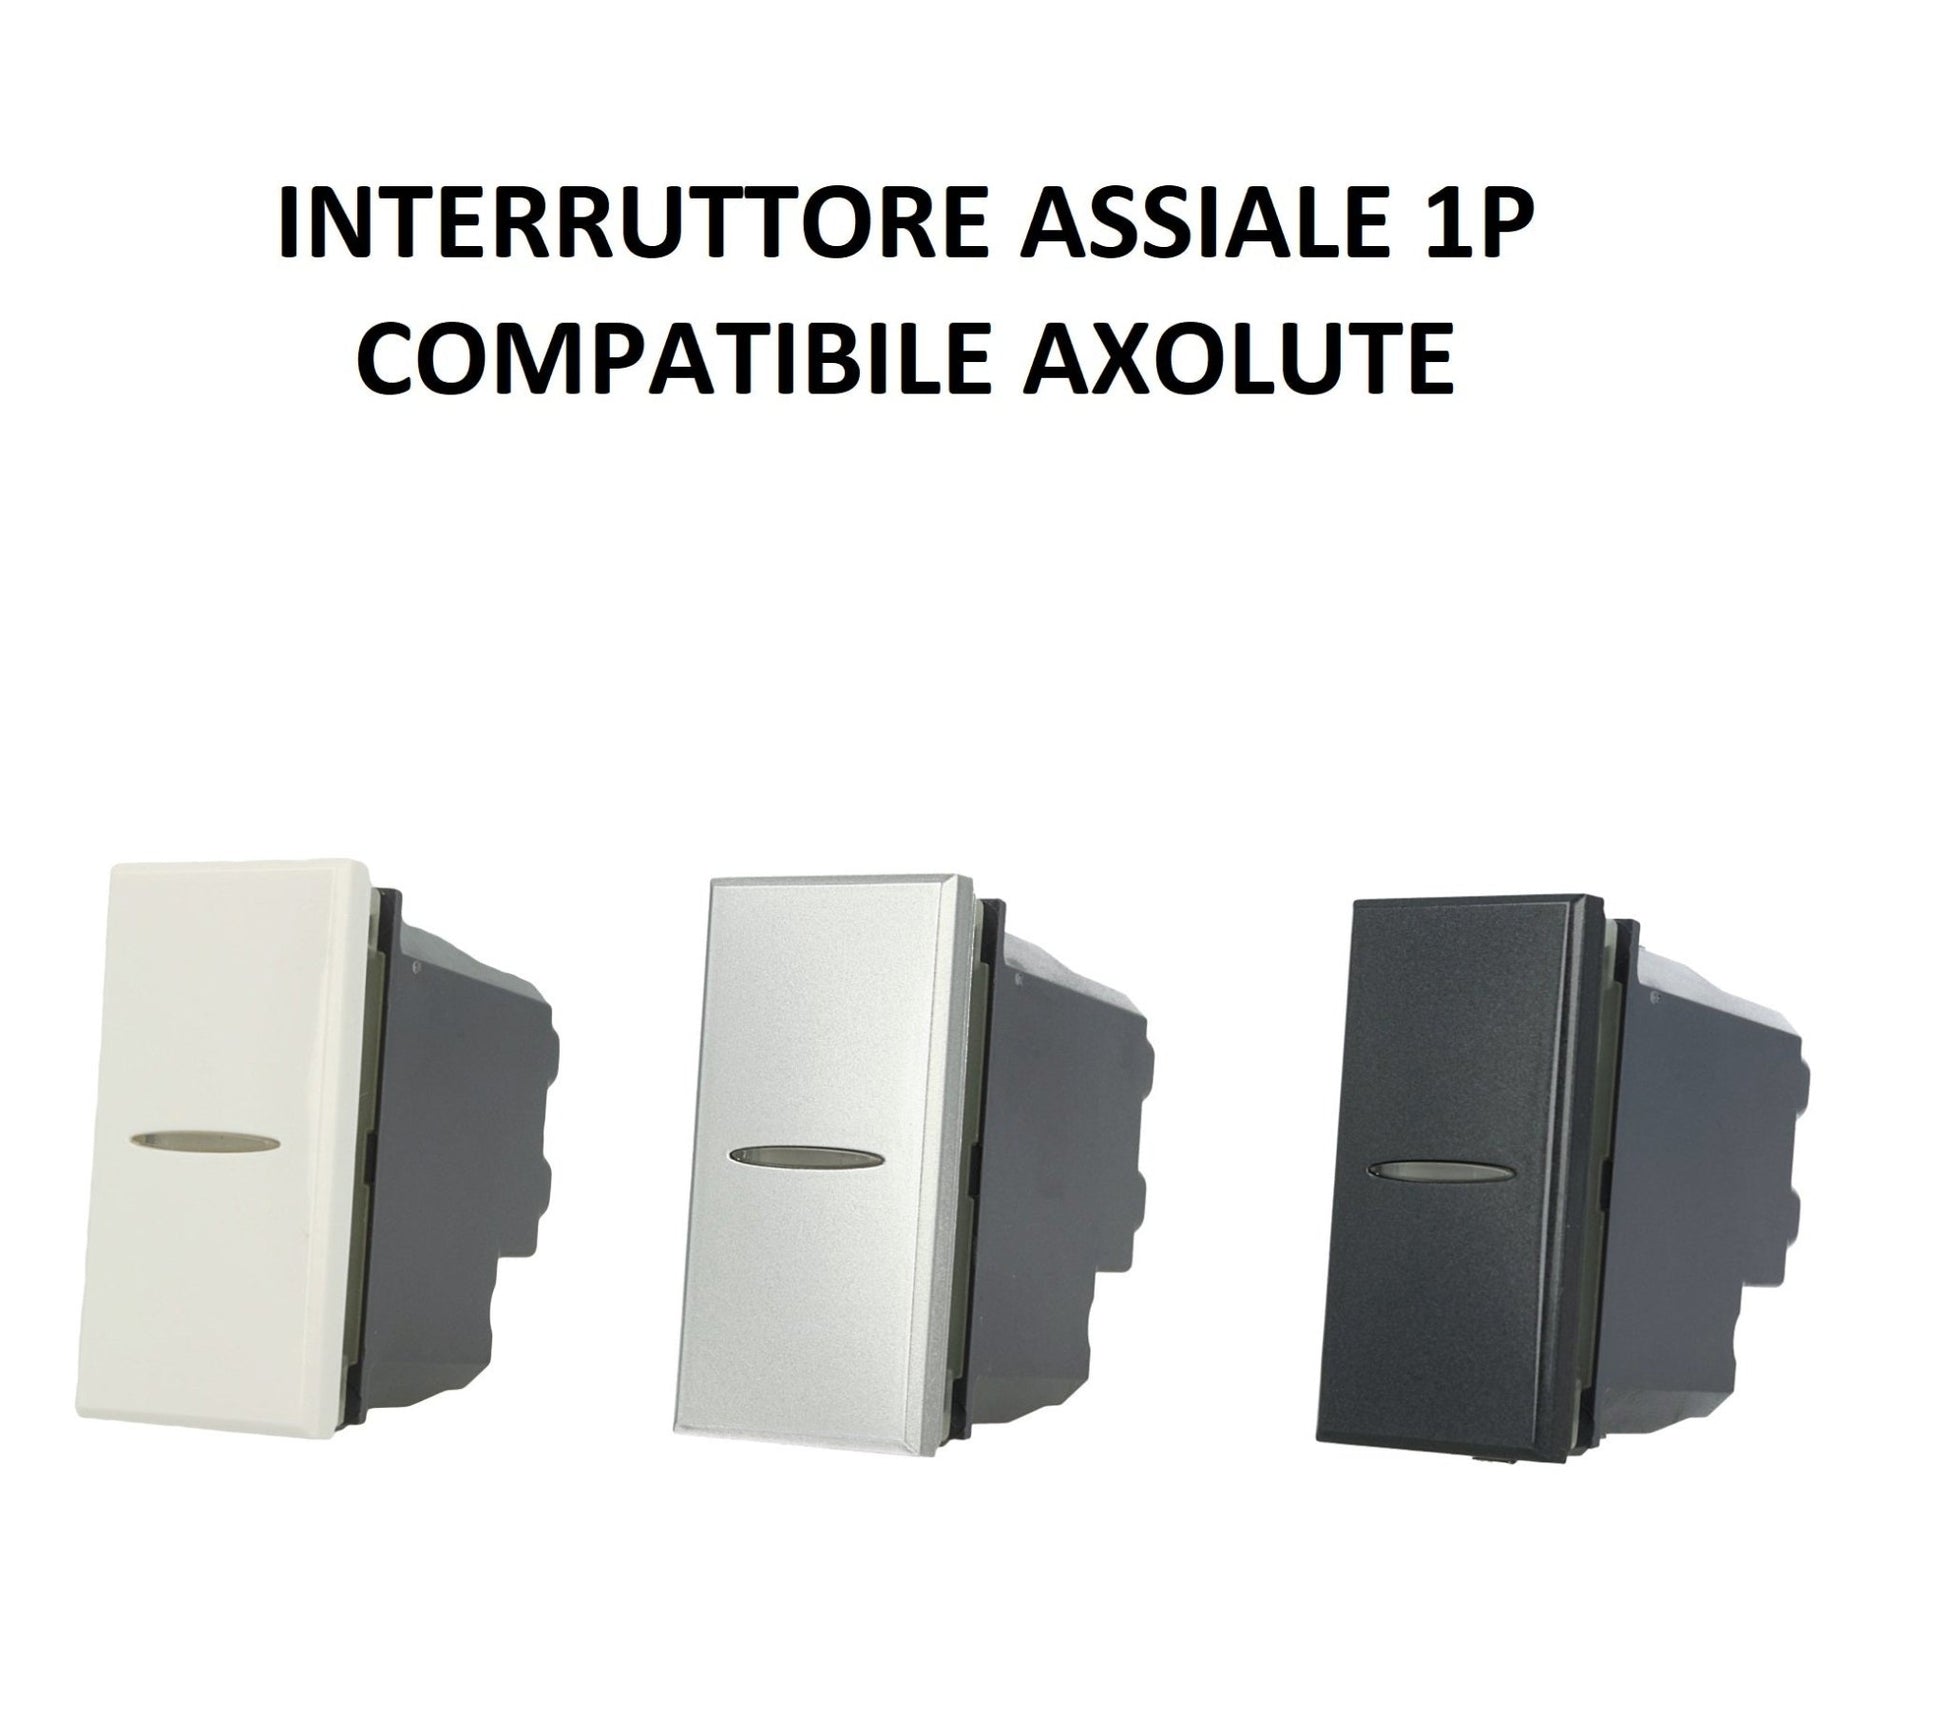 Interruttore Assiale 1P 16A 250V da incasso Bianco Silver Nero compatibile Bticino Axolute - puntoluceled